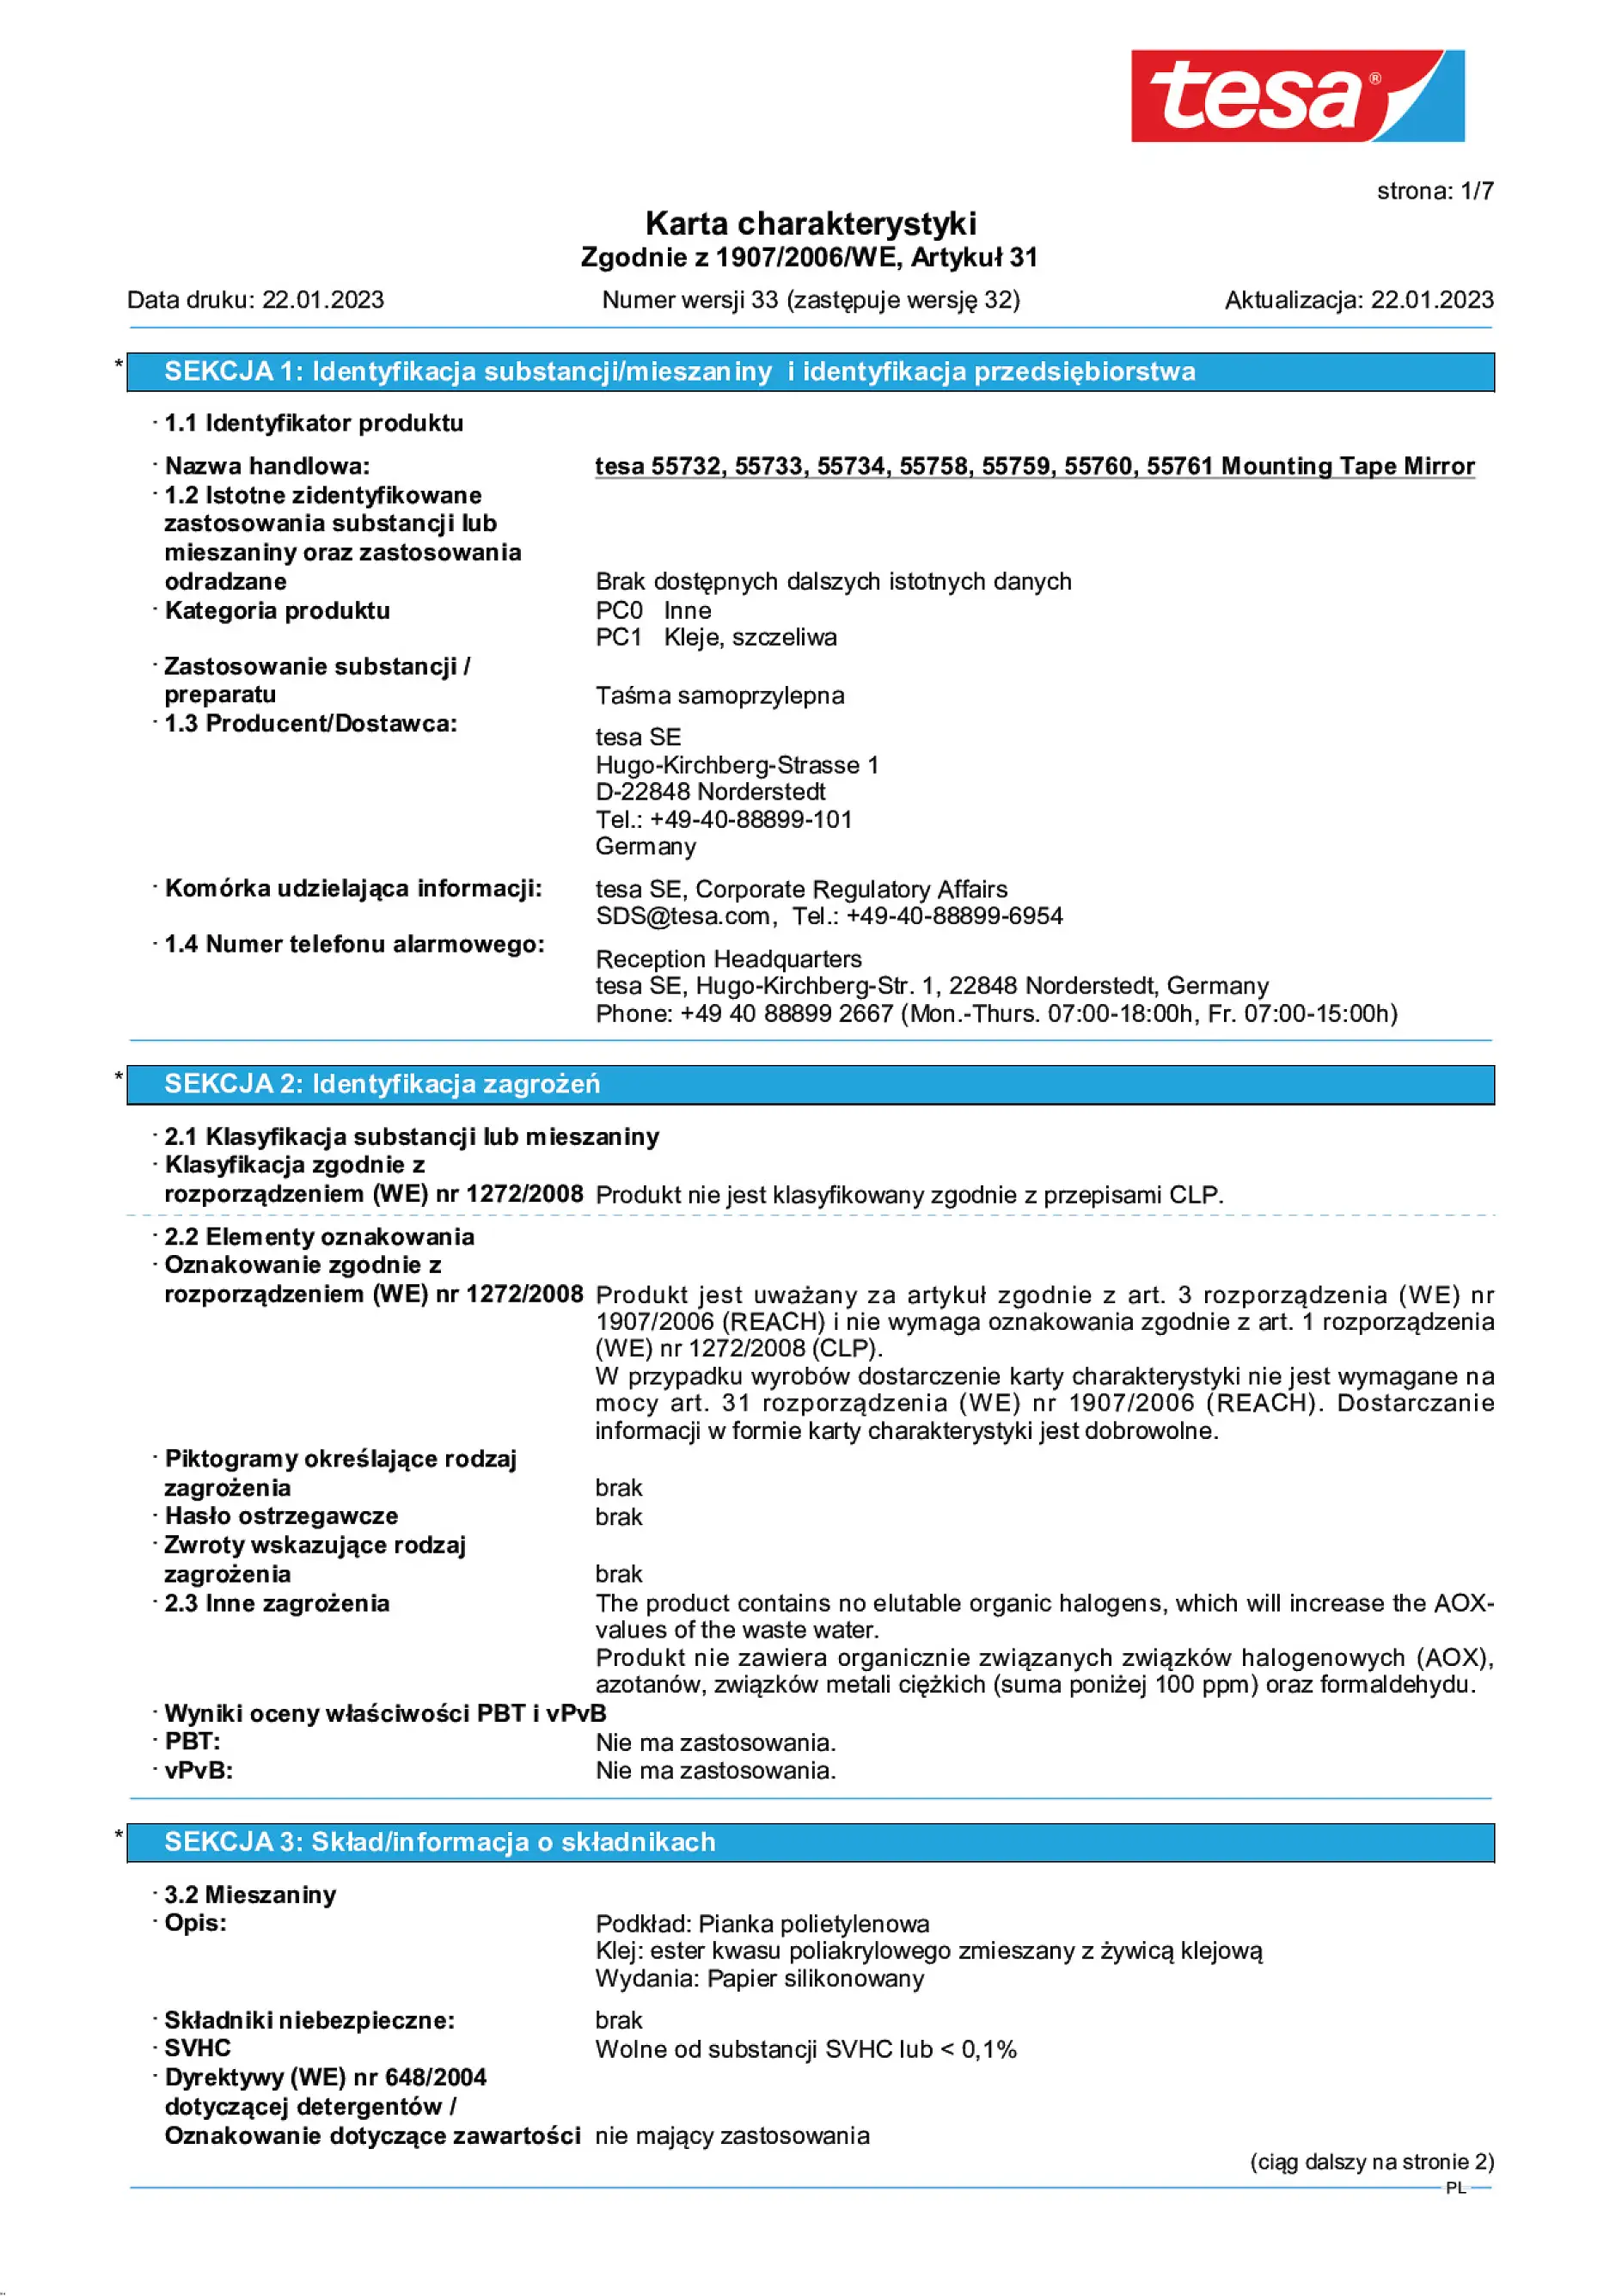 Safety data sheet_tesa® Professional 55733_pl-PL_v33